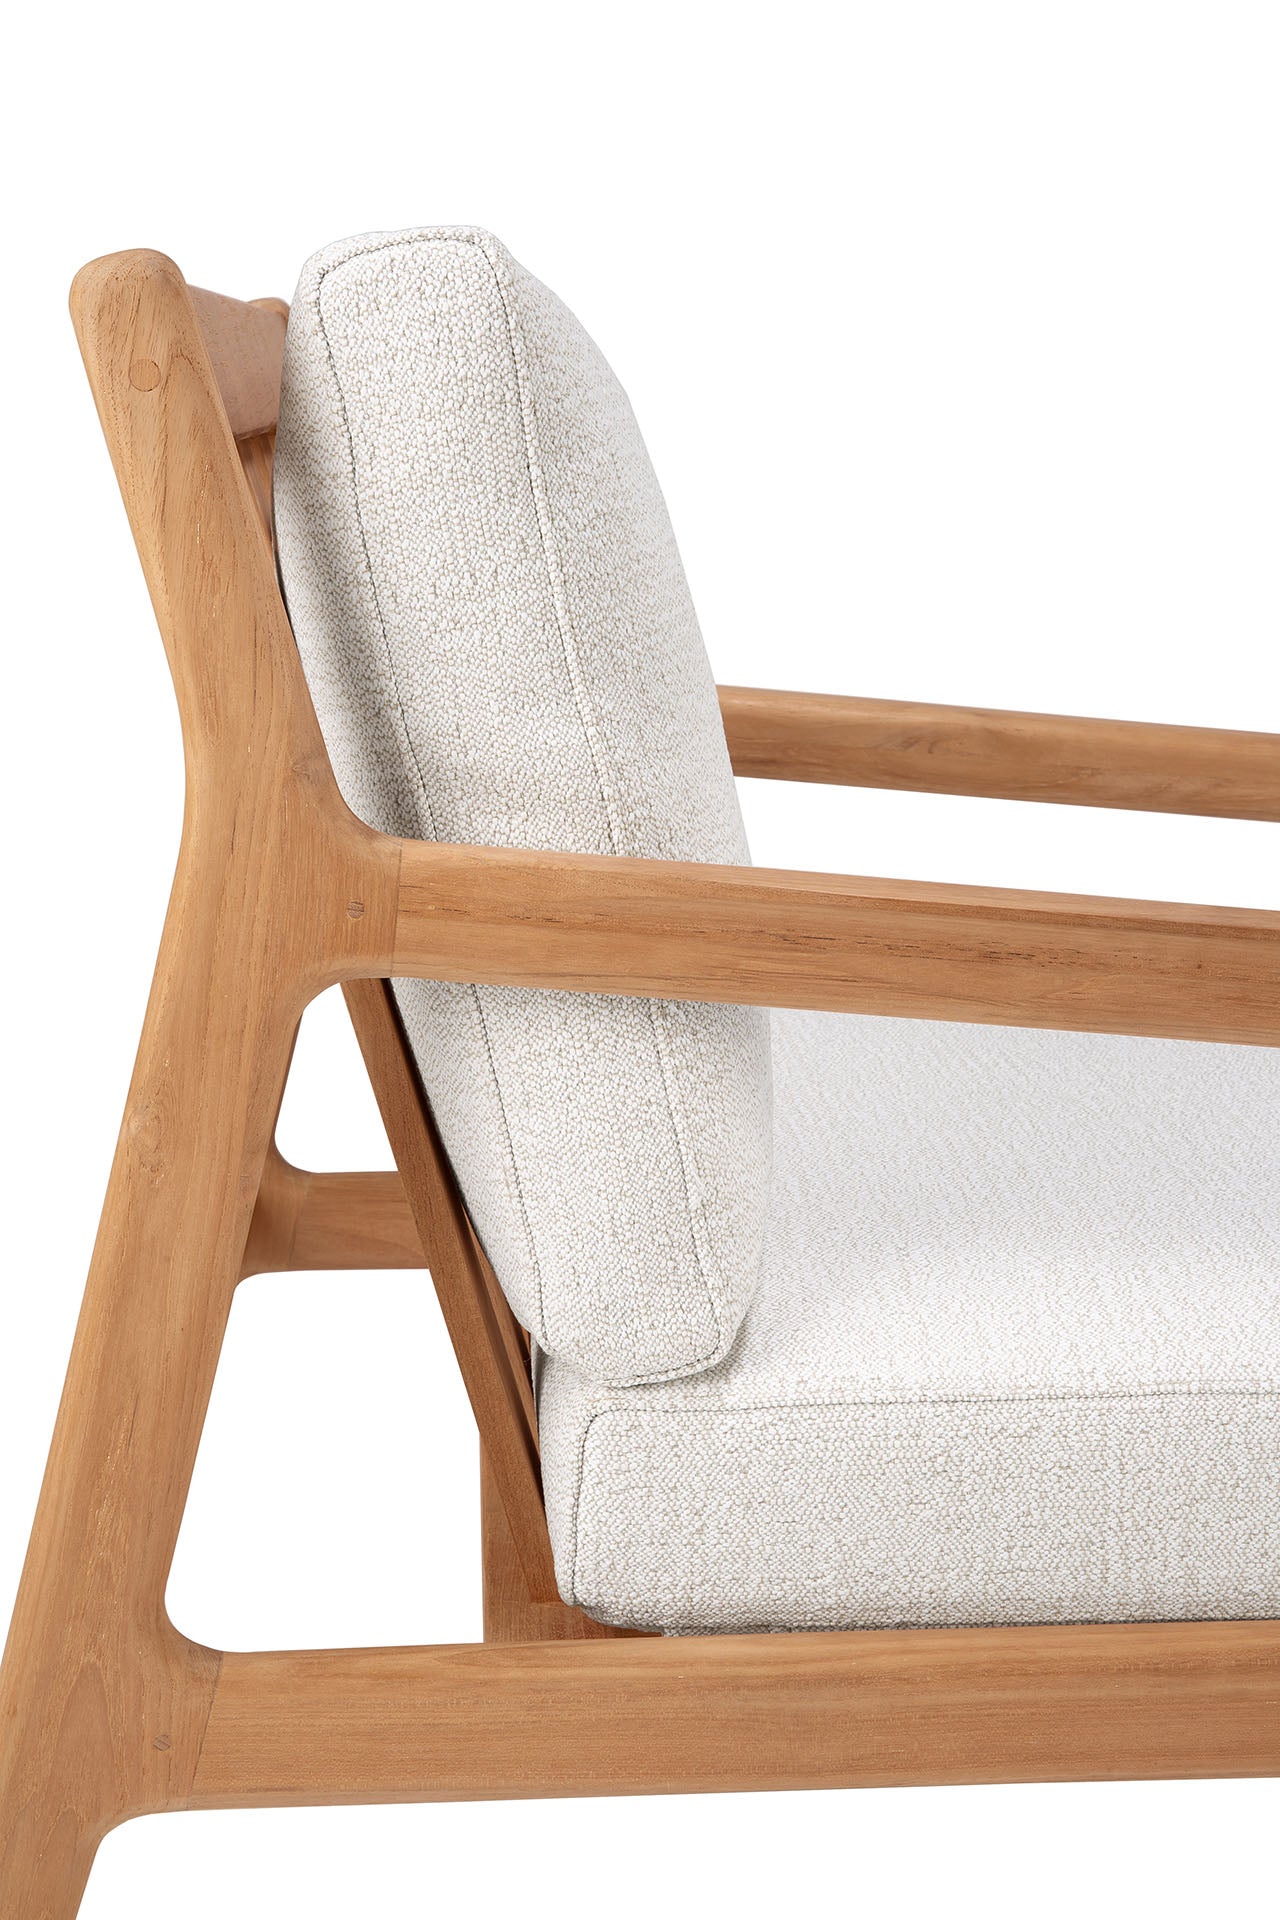 比利時原裝進口實木傢俬 - 戶外系列 - Jack系列柚木休閒椅